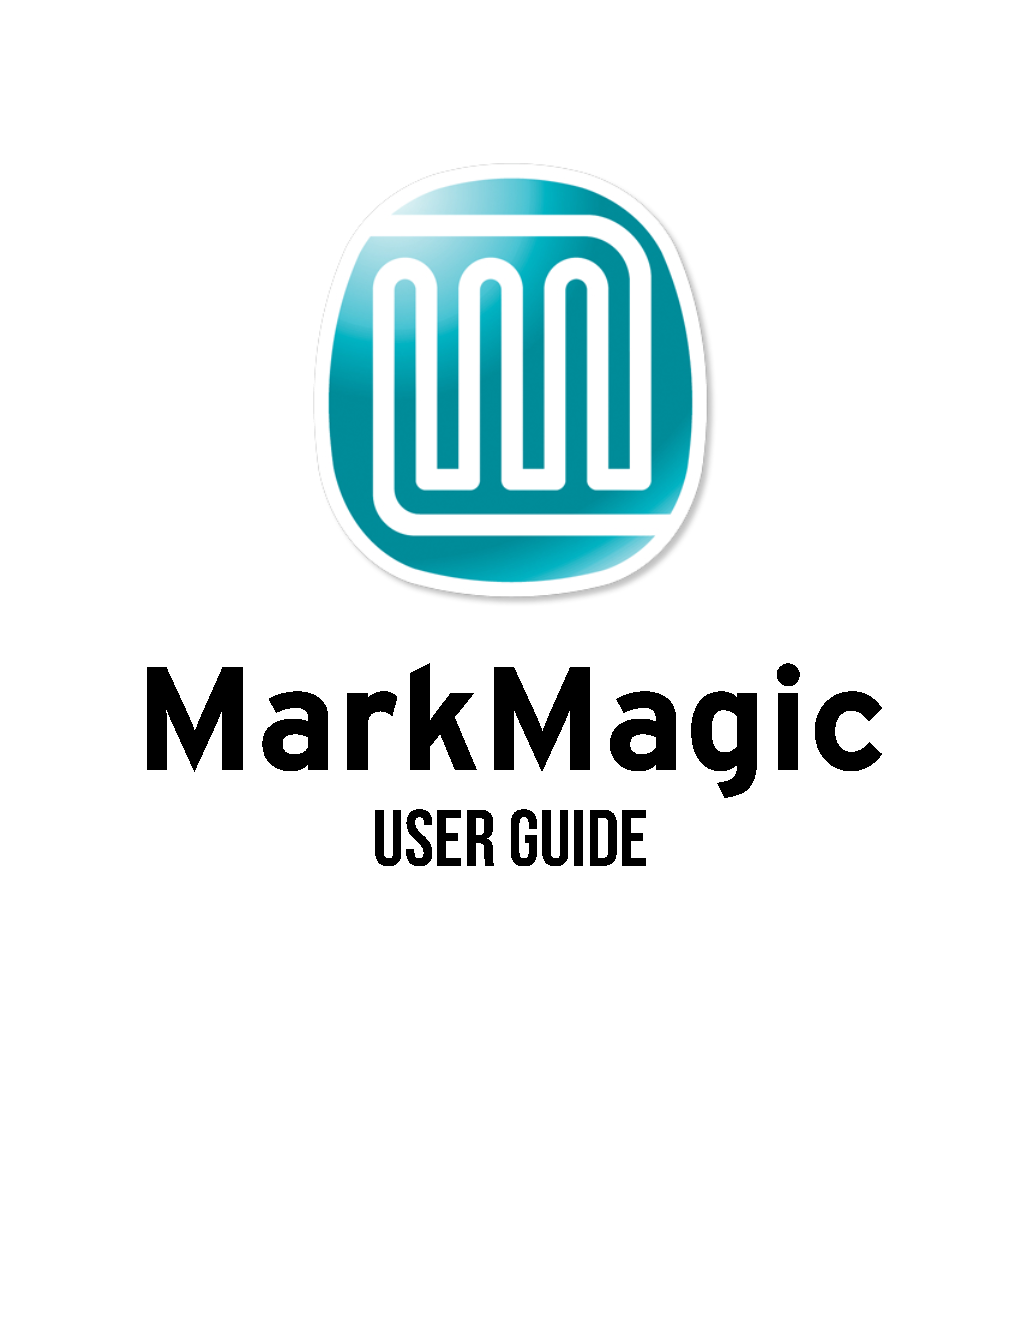 Markmagic User Guide